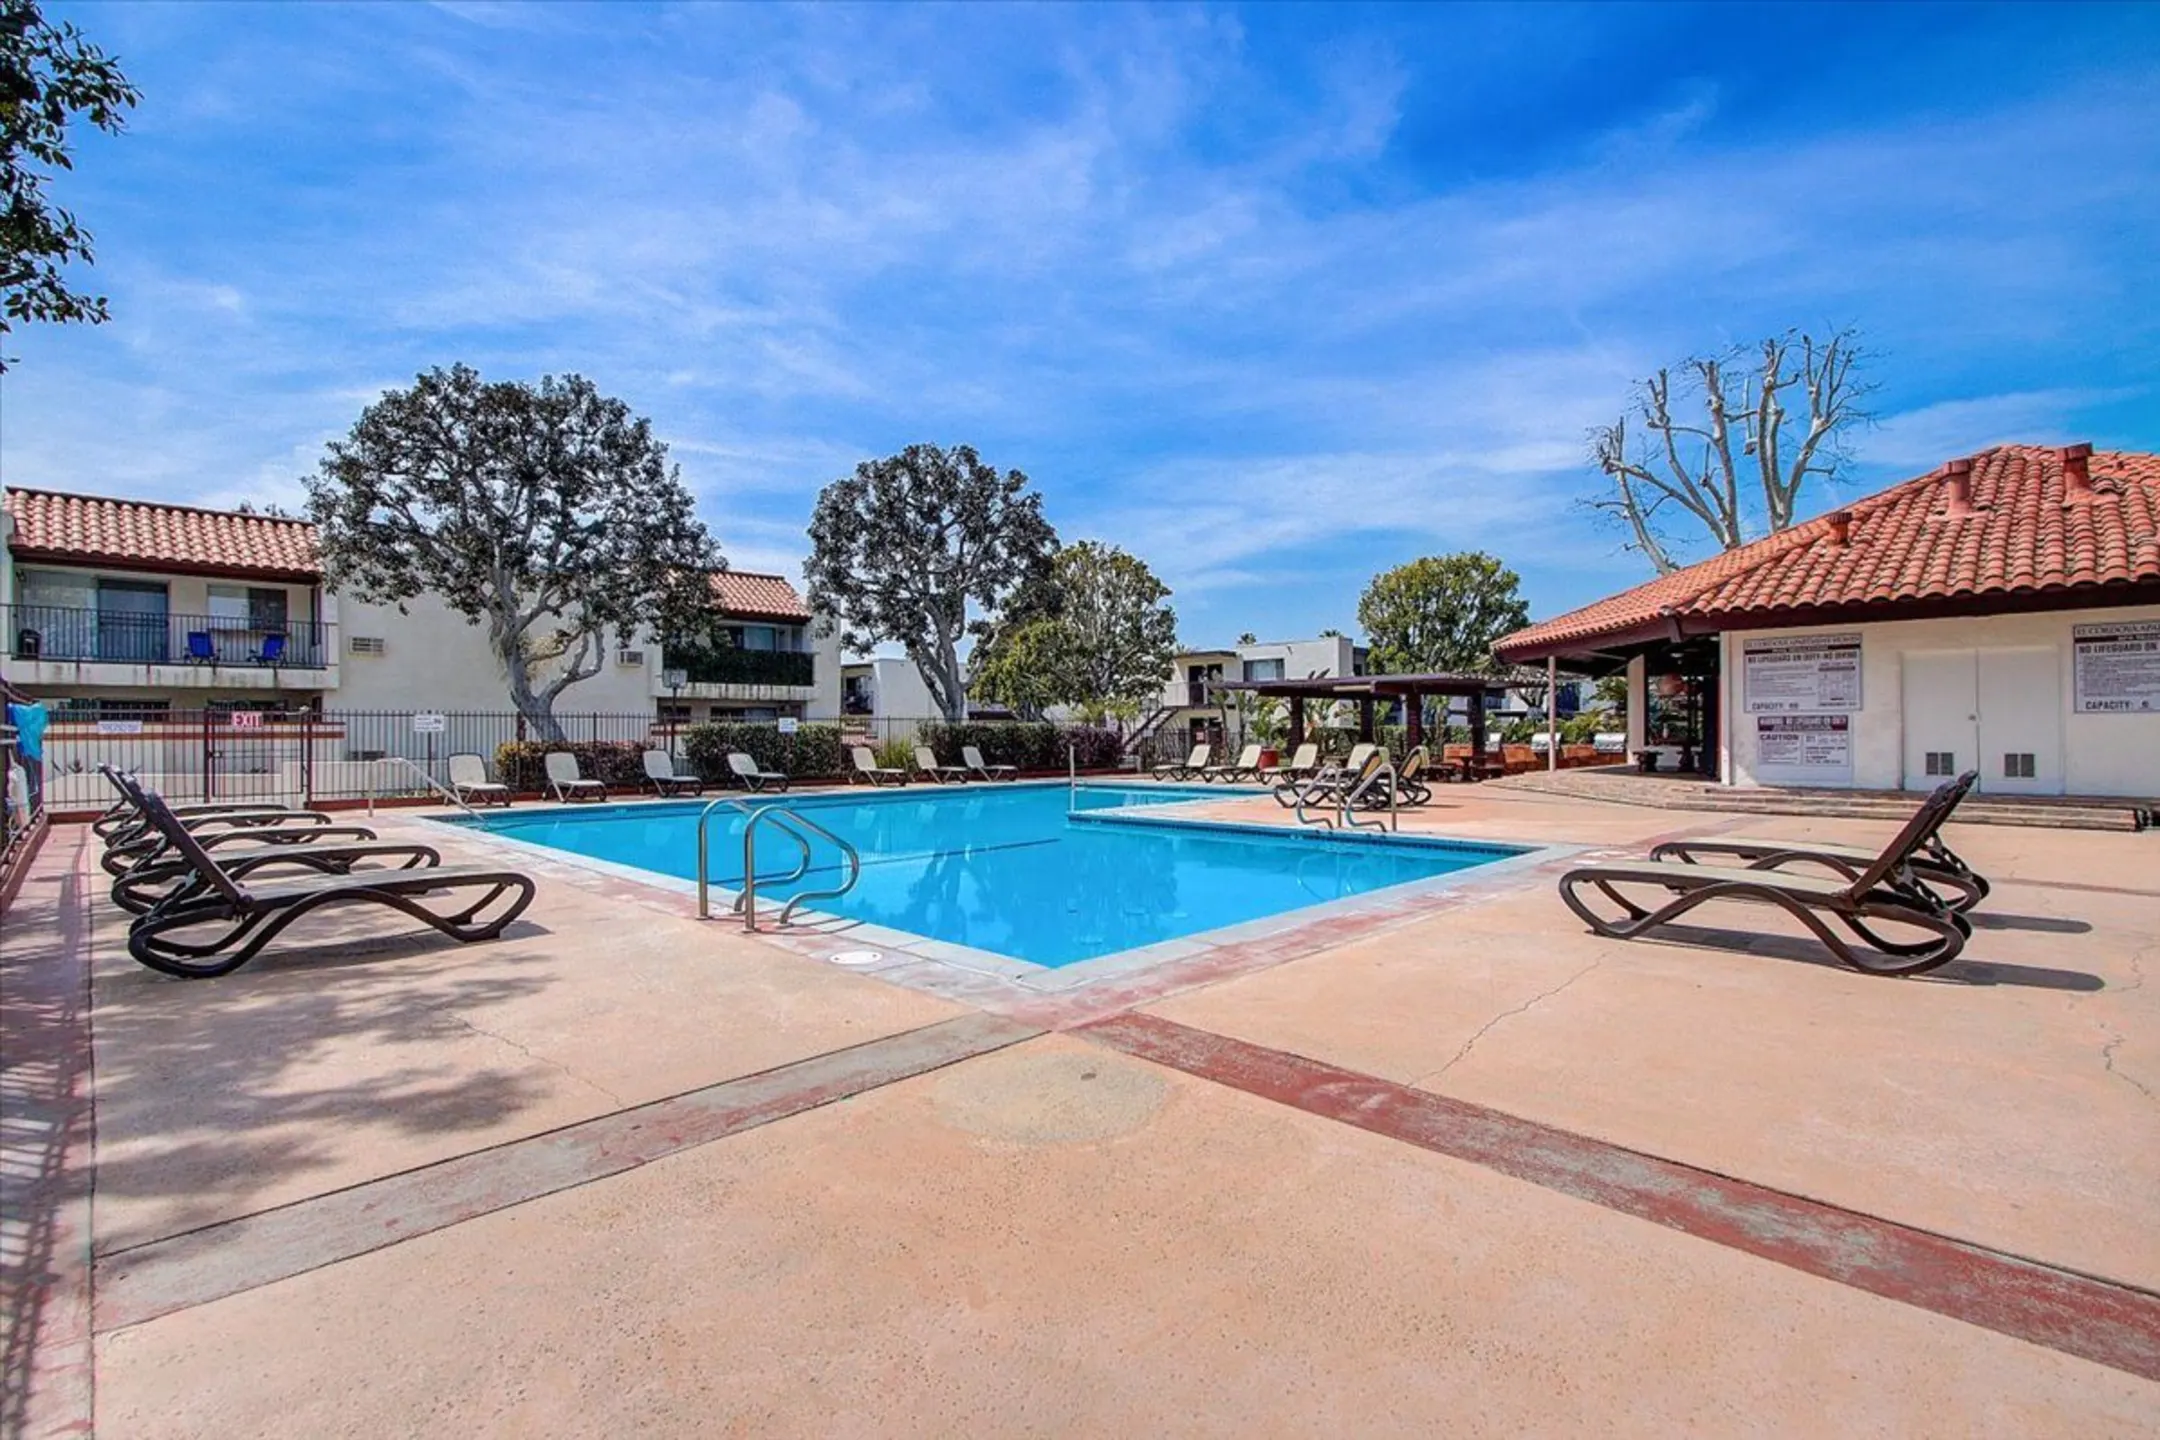 Pool - El Cordova Apartments - Carson, CA